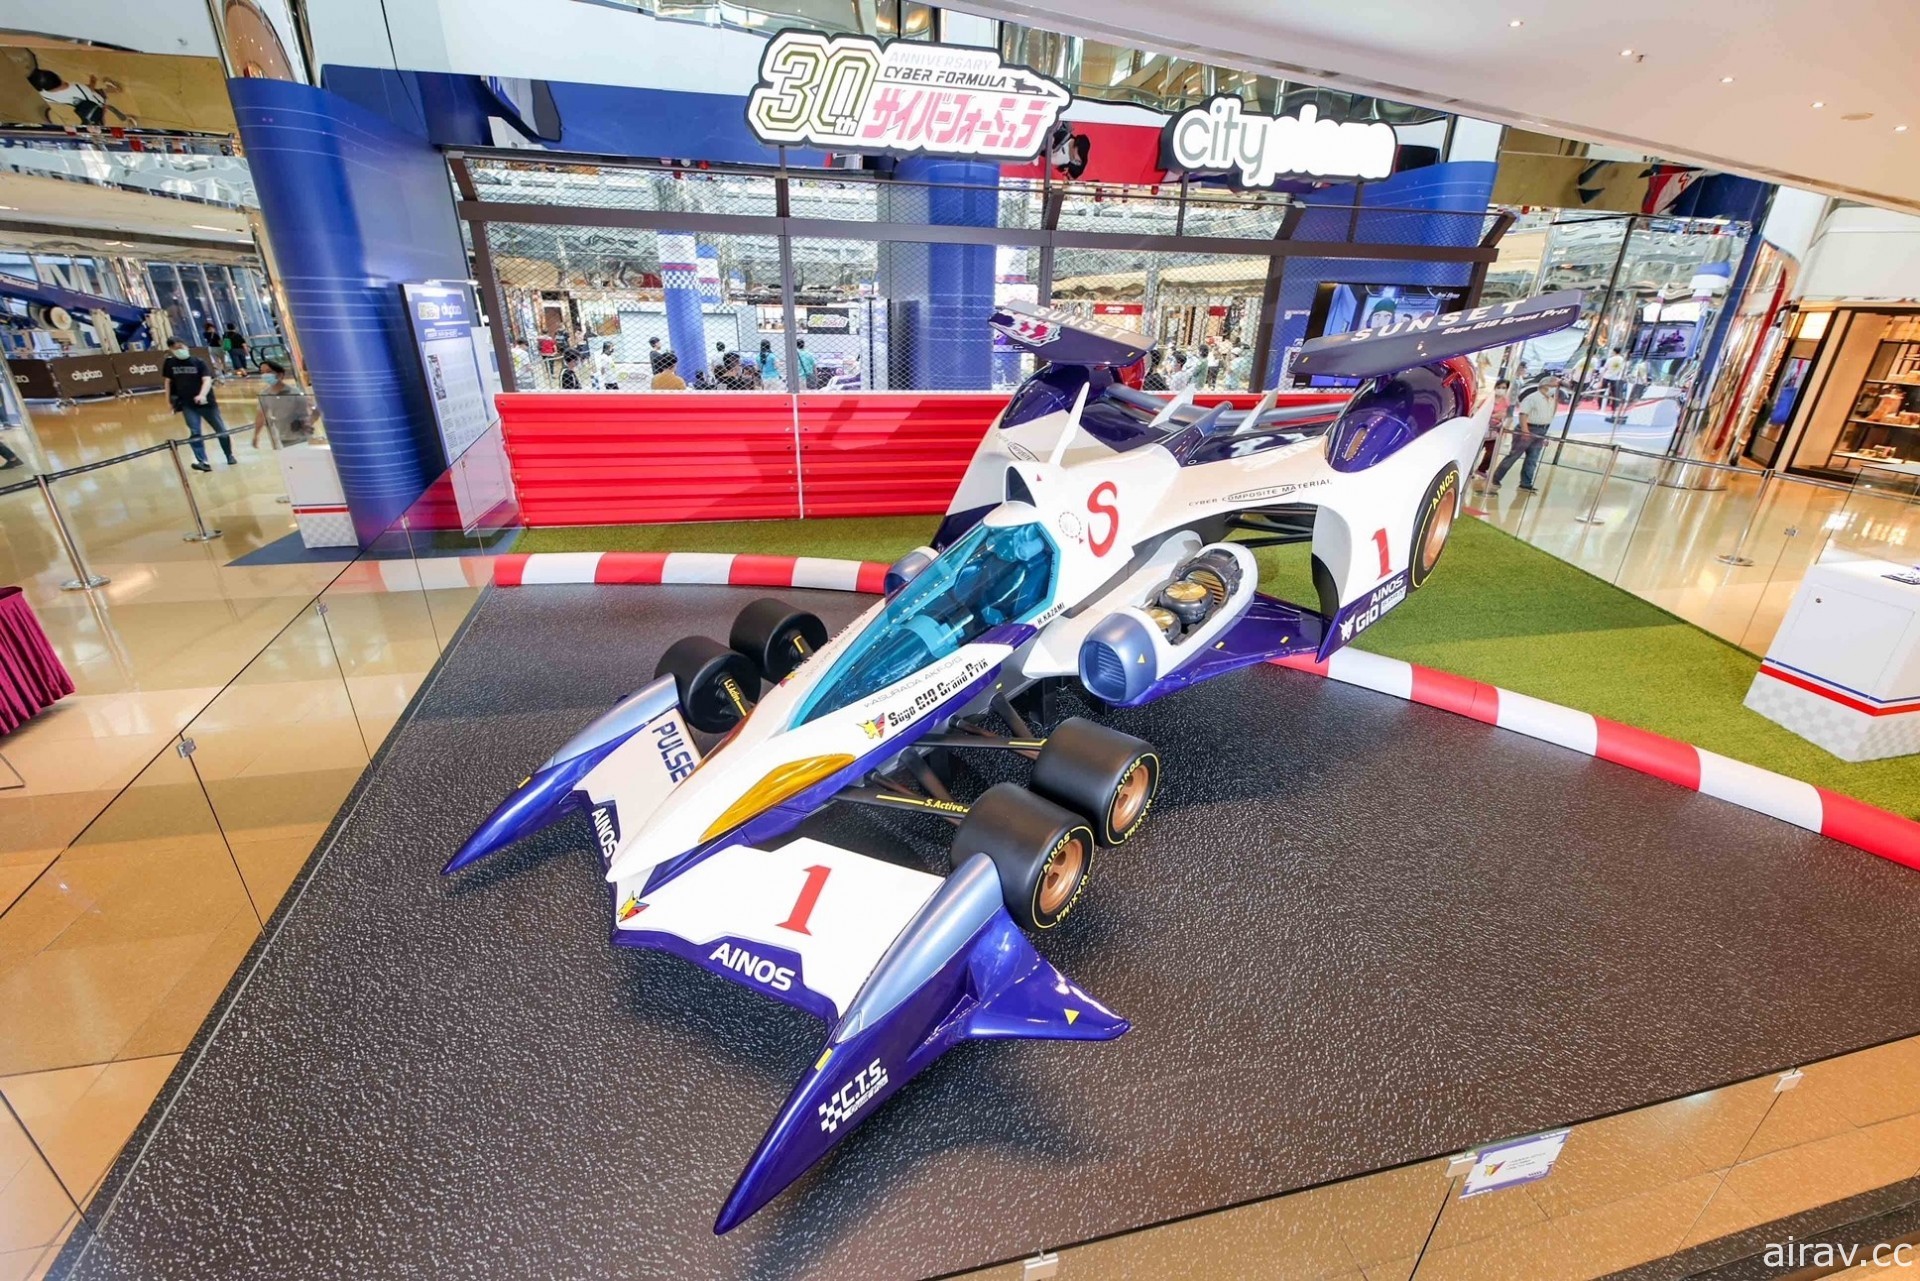 「閃電霹靂車 World Tour 台灣 GP」「Megahobby EXPO」1/7 起於台北三創登場